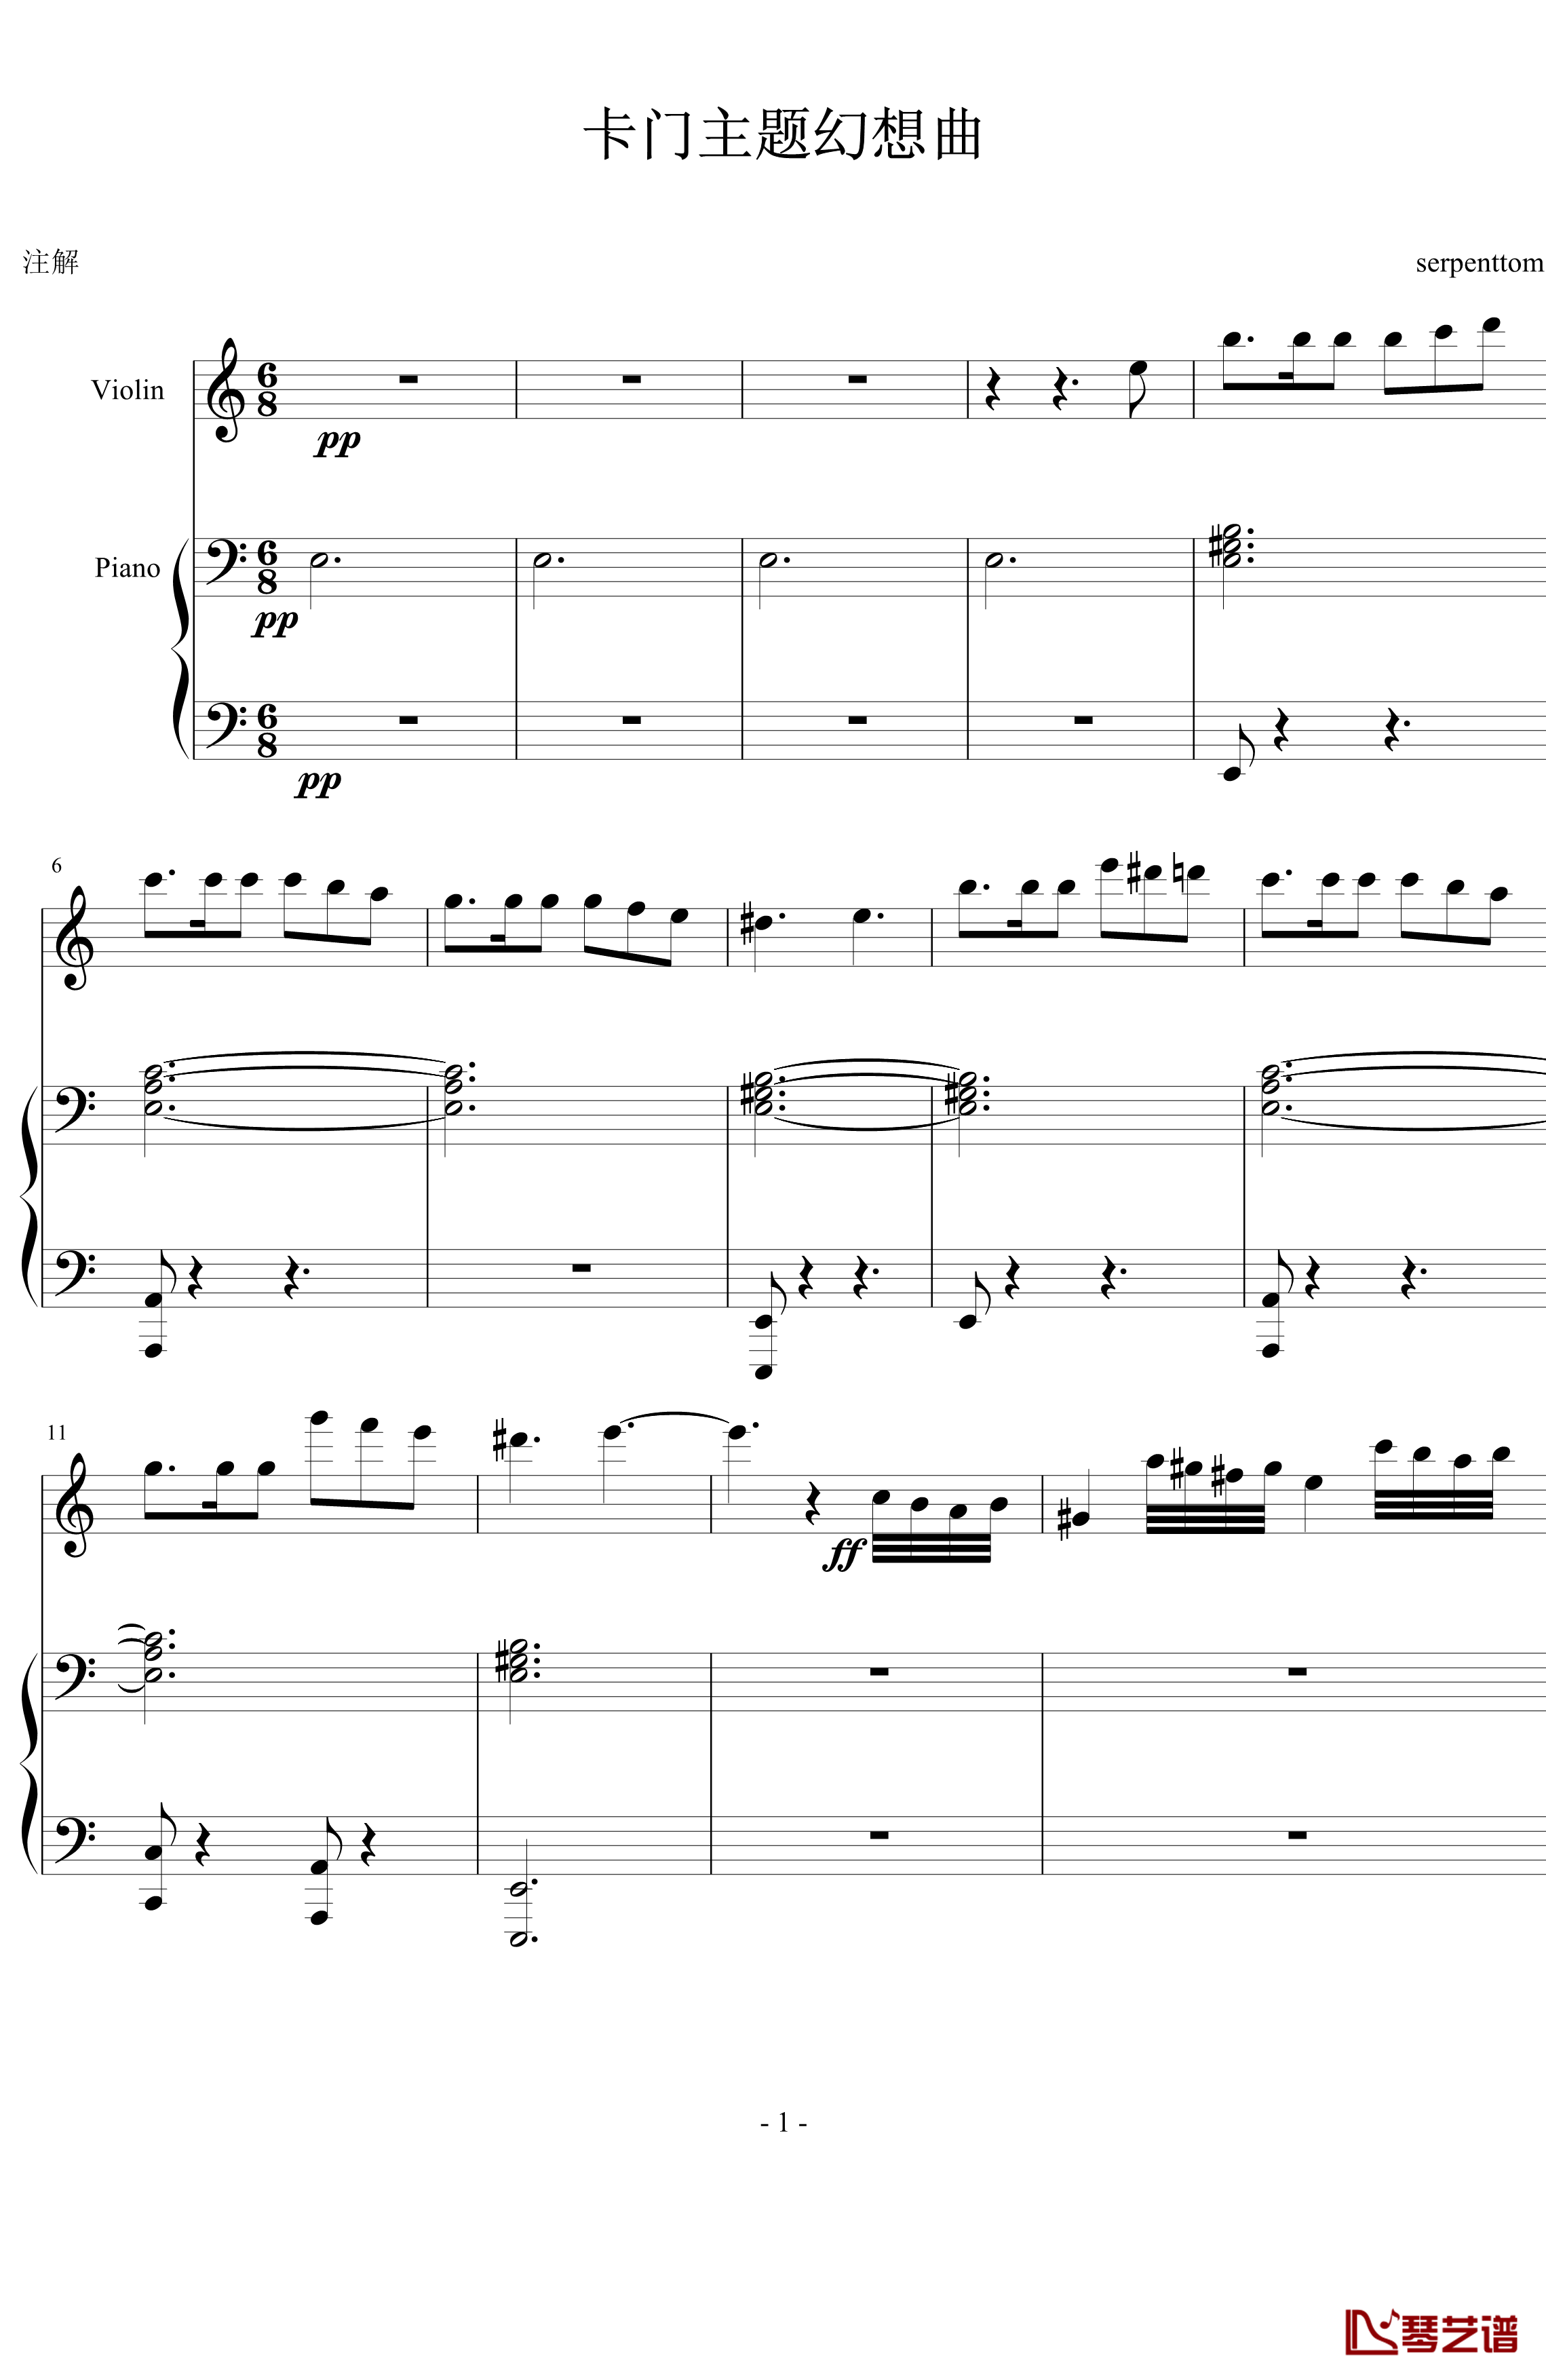 卡门主题幻想曲钢琴谱-慢板部分-萨拉萨蒂-Sarasate1